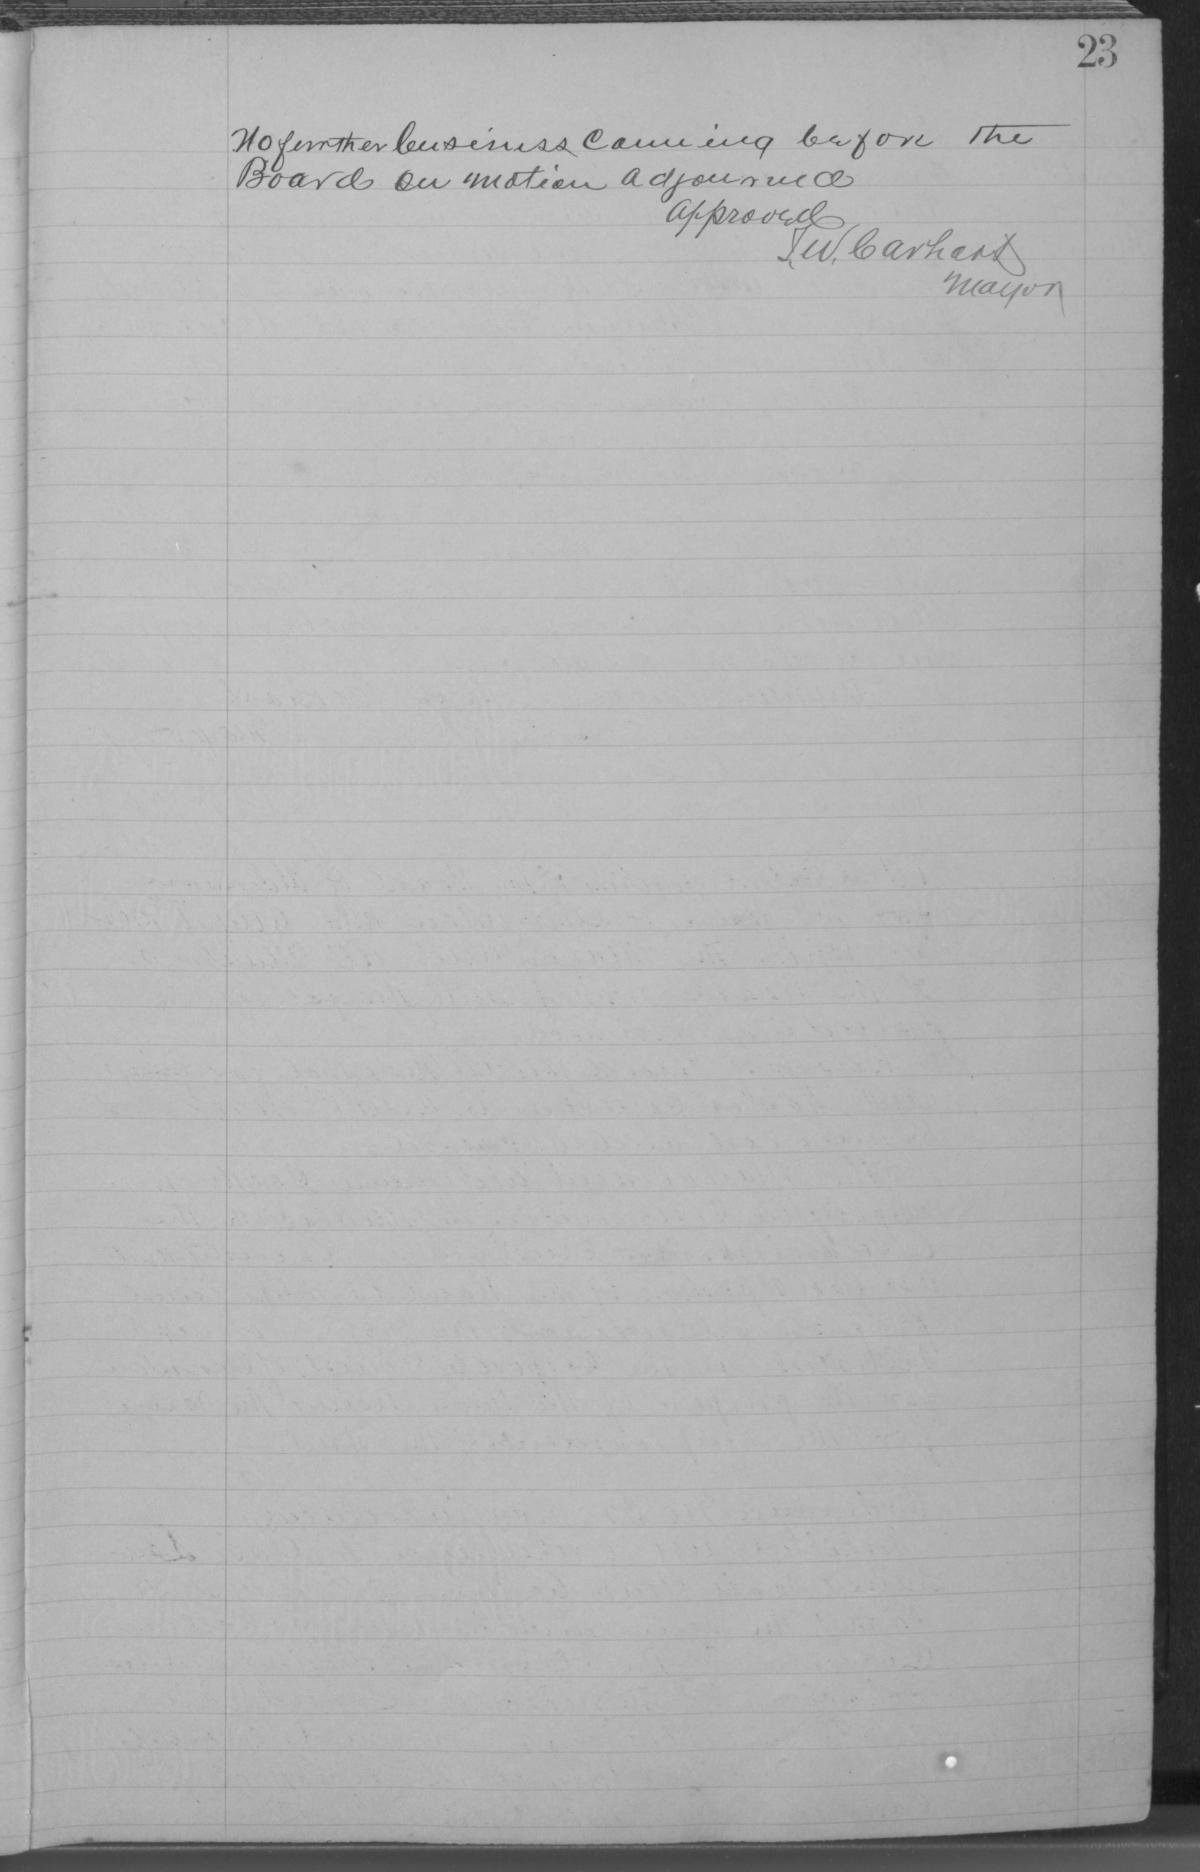 [City of Clarendon Ledger: Minutes for September 10, 1901- April 19, 1917]
                                                
                                                    23
                                                